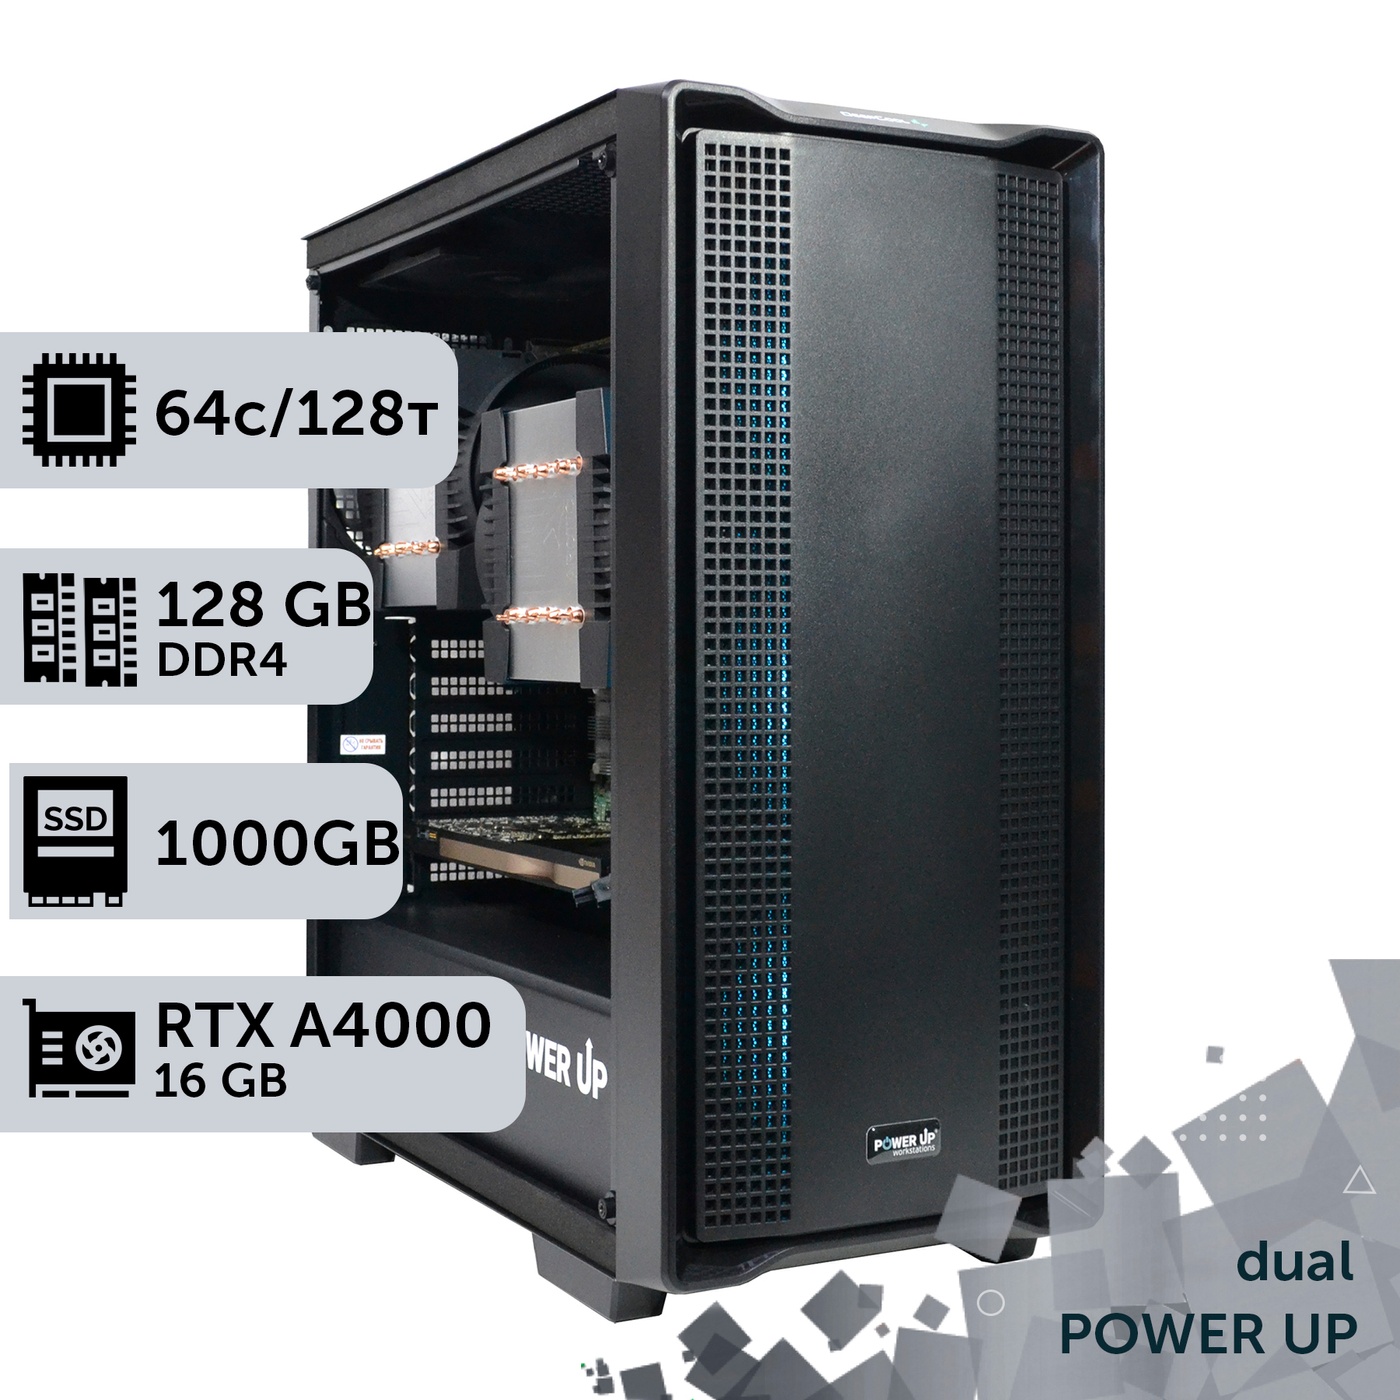 Двухпроцессорная рабочая станция PowerUp #373 AMD EPYC 7551 x2/128 GB/SSD 1TB/NVIDIA Quadro RTX A4000 16GB